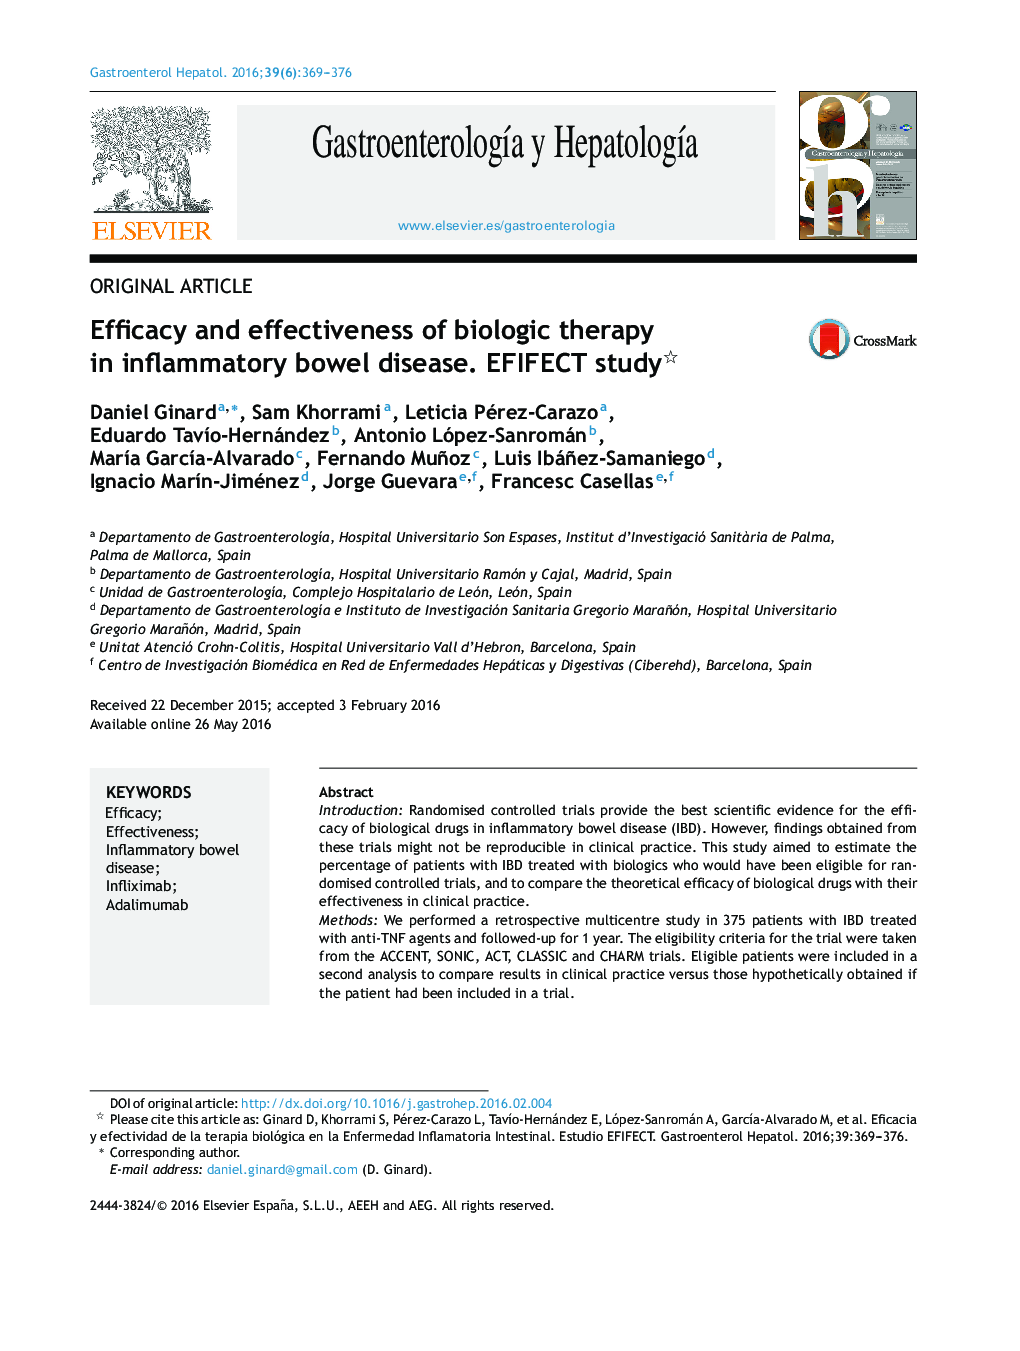 کارآیی و کارآمدی درمان بیولوژیک در بیماری التهابی روده؛ مطالعه EFIFECT